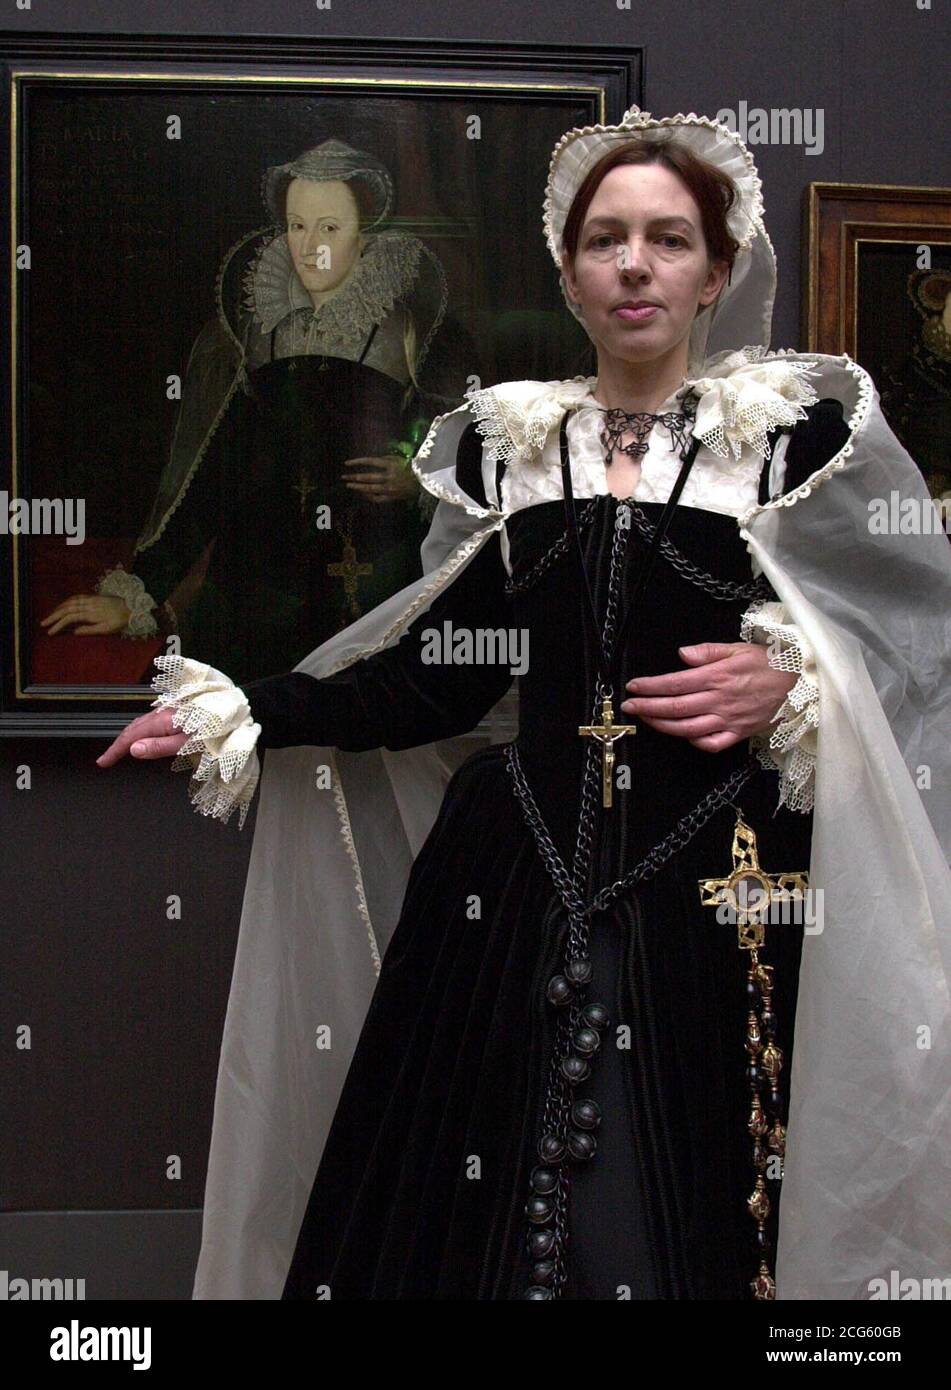 8 DICEMBRE: In questo giorno del 1587, Maria, Regina di Scozia, fu giustiziata. La regina Elisabetta negò qualsiasi coinvolgimento con la sua morte, insistendo sul fatto che era stata ingannata a firmare il mandato di morte. Cait Goodwin studentessa della Scuola d'Arte di Wimbledon, reparto costumi, vestita come Maria, Regina di Scozia accanto al suo ritratto da un artista sconosciuto, dopo Nicholas Hilliard c.1610 nella National Portrait Gallery di Londra. * gli studenti ricreano ritratti risalenti al periodo Tudor fino al XIX secolo, che sono stati fonte di ispirazione per i loro sontuosi costumi. Foto Stock